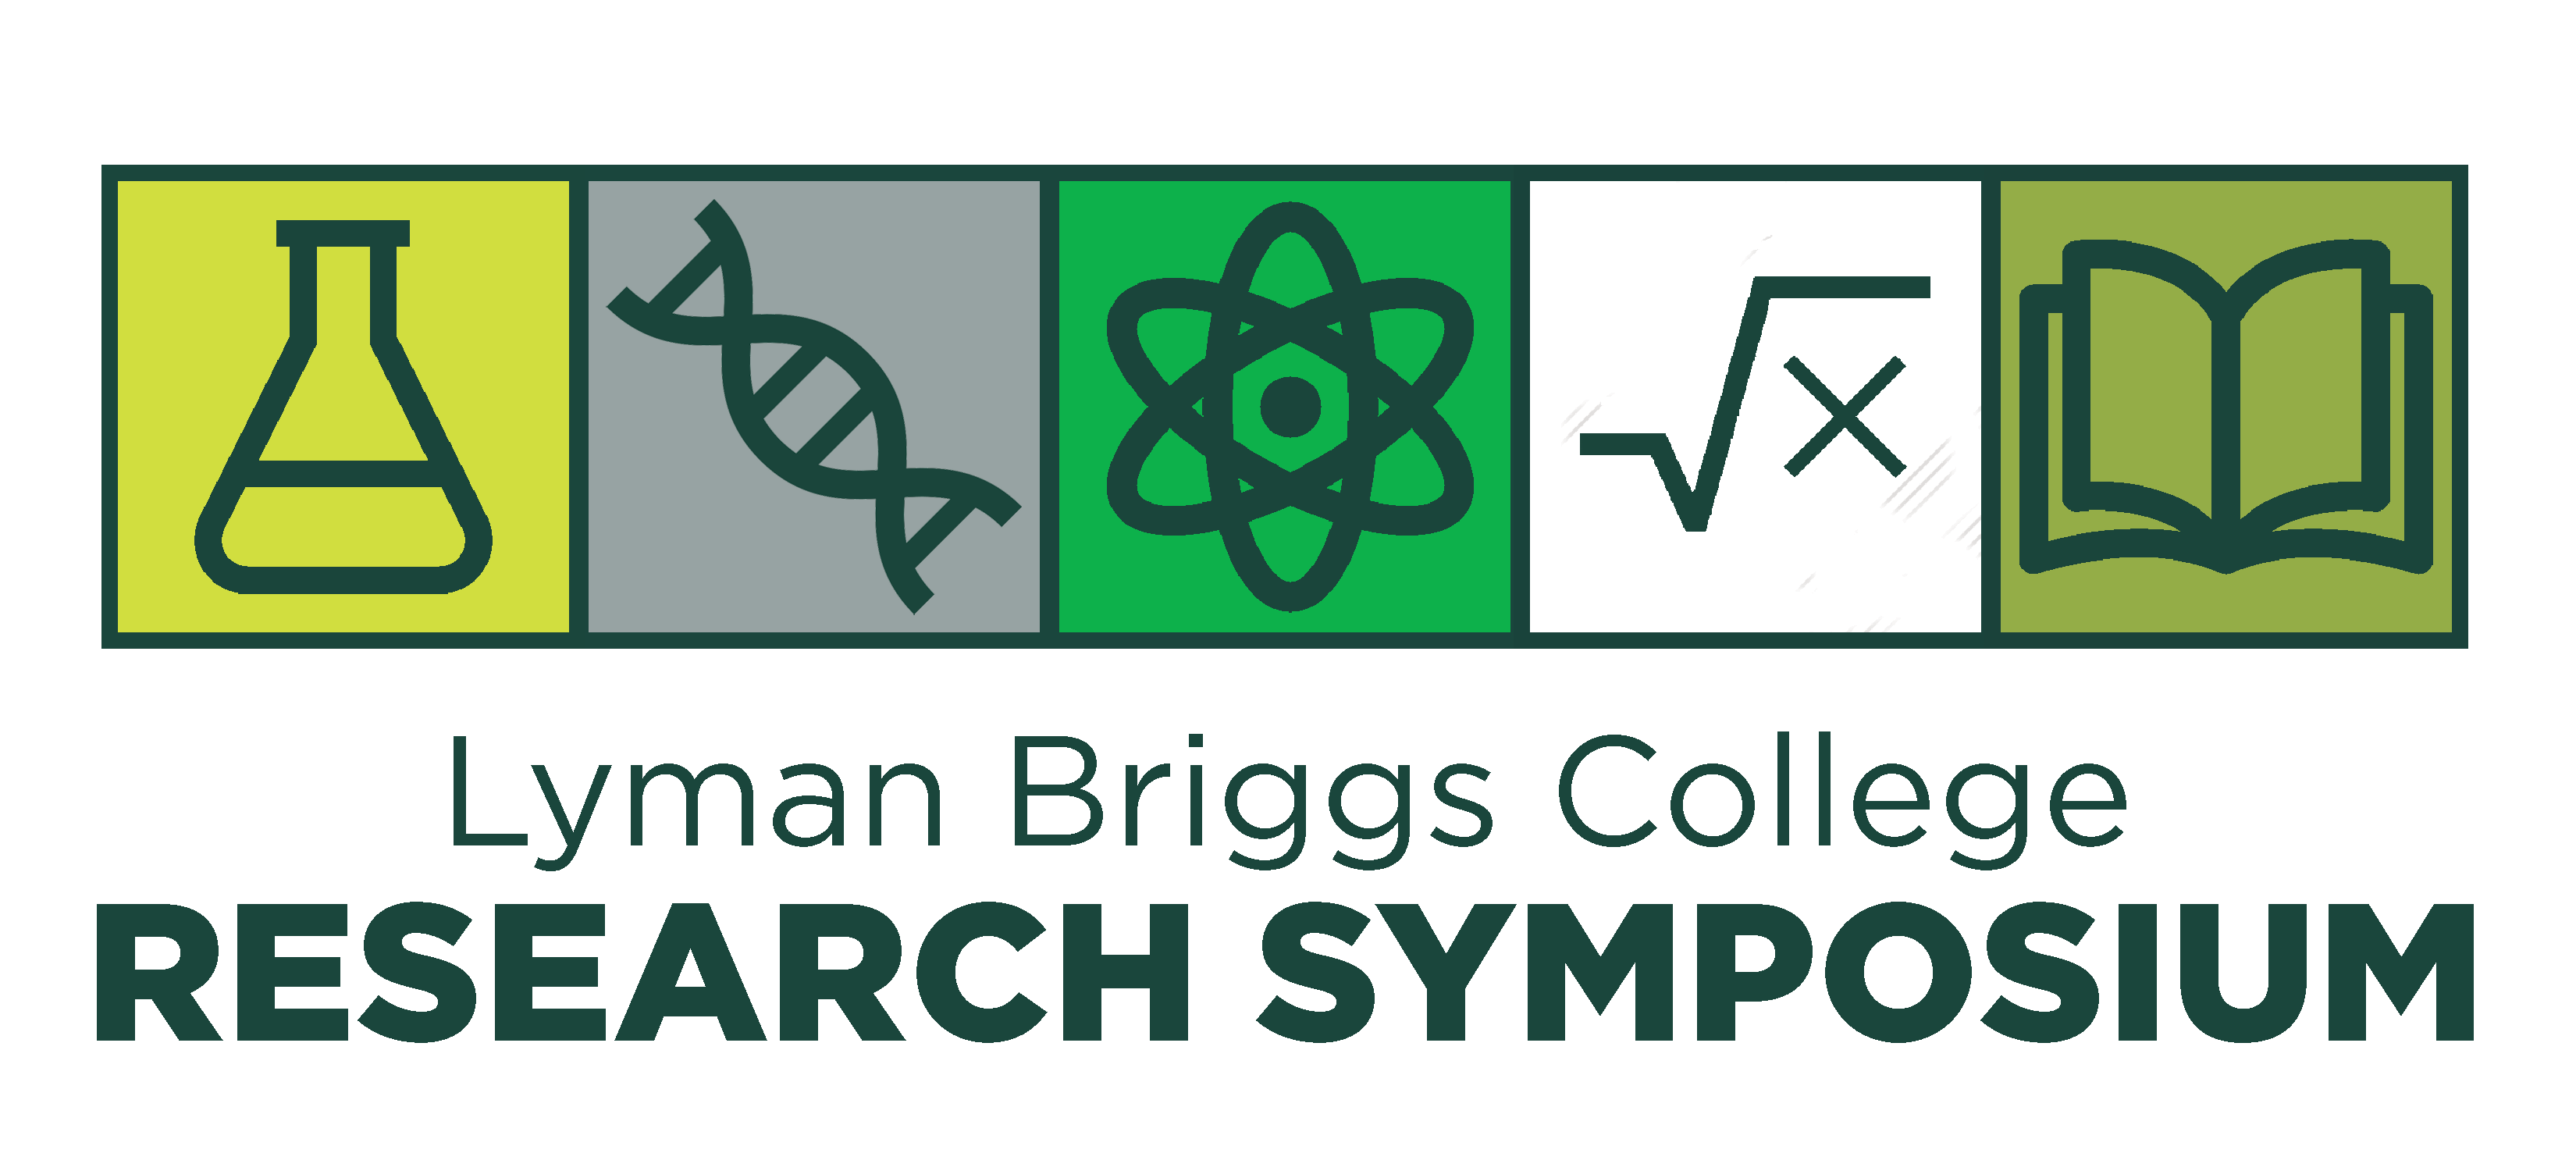 LBC research symposium logo